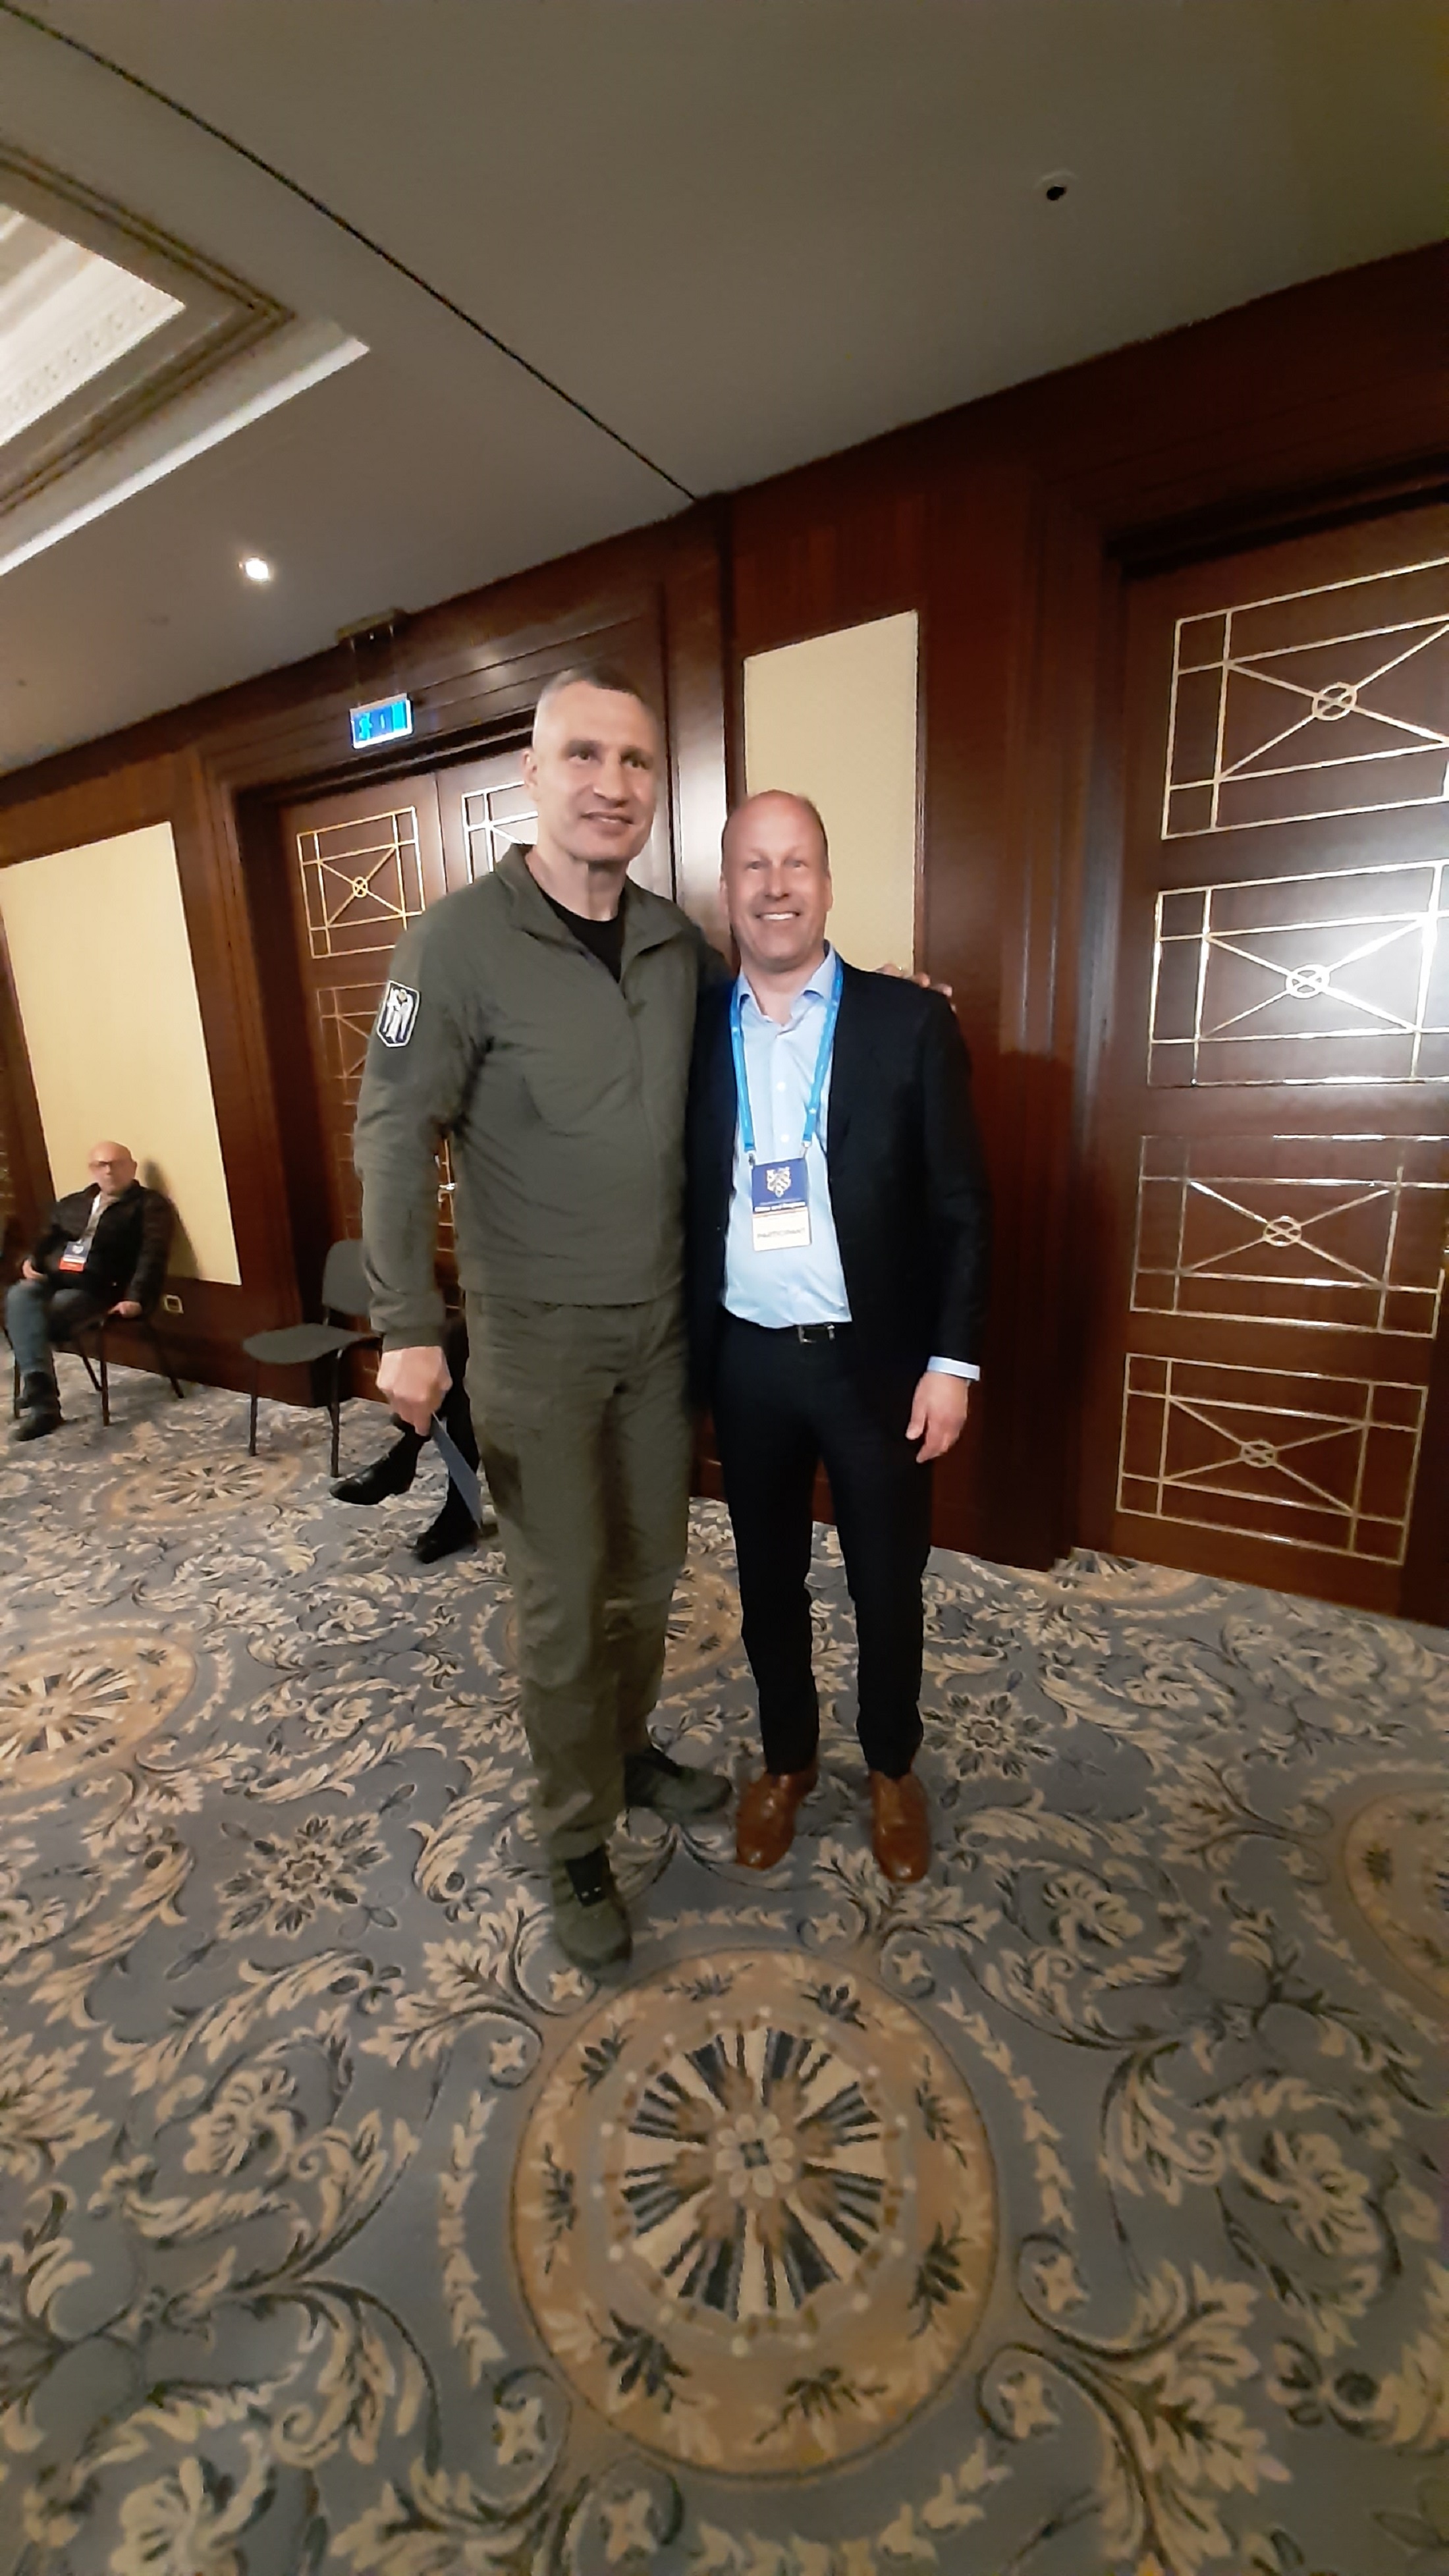 BU: Bezirkstagspräsident Martin Sailer im Gespräch mit dem Kiewer Bürgermeister Vitali Klitschko. Bildnachweis: Bezirk Schwaben.